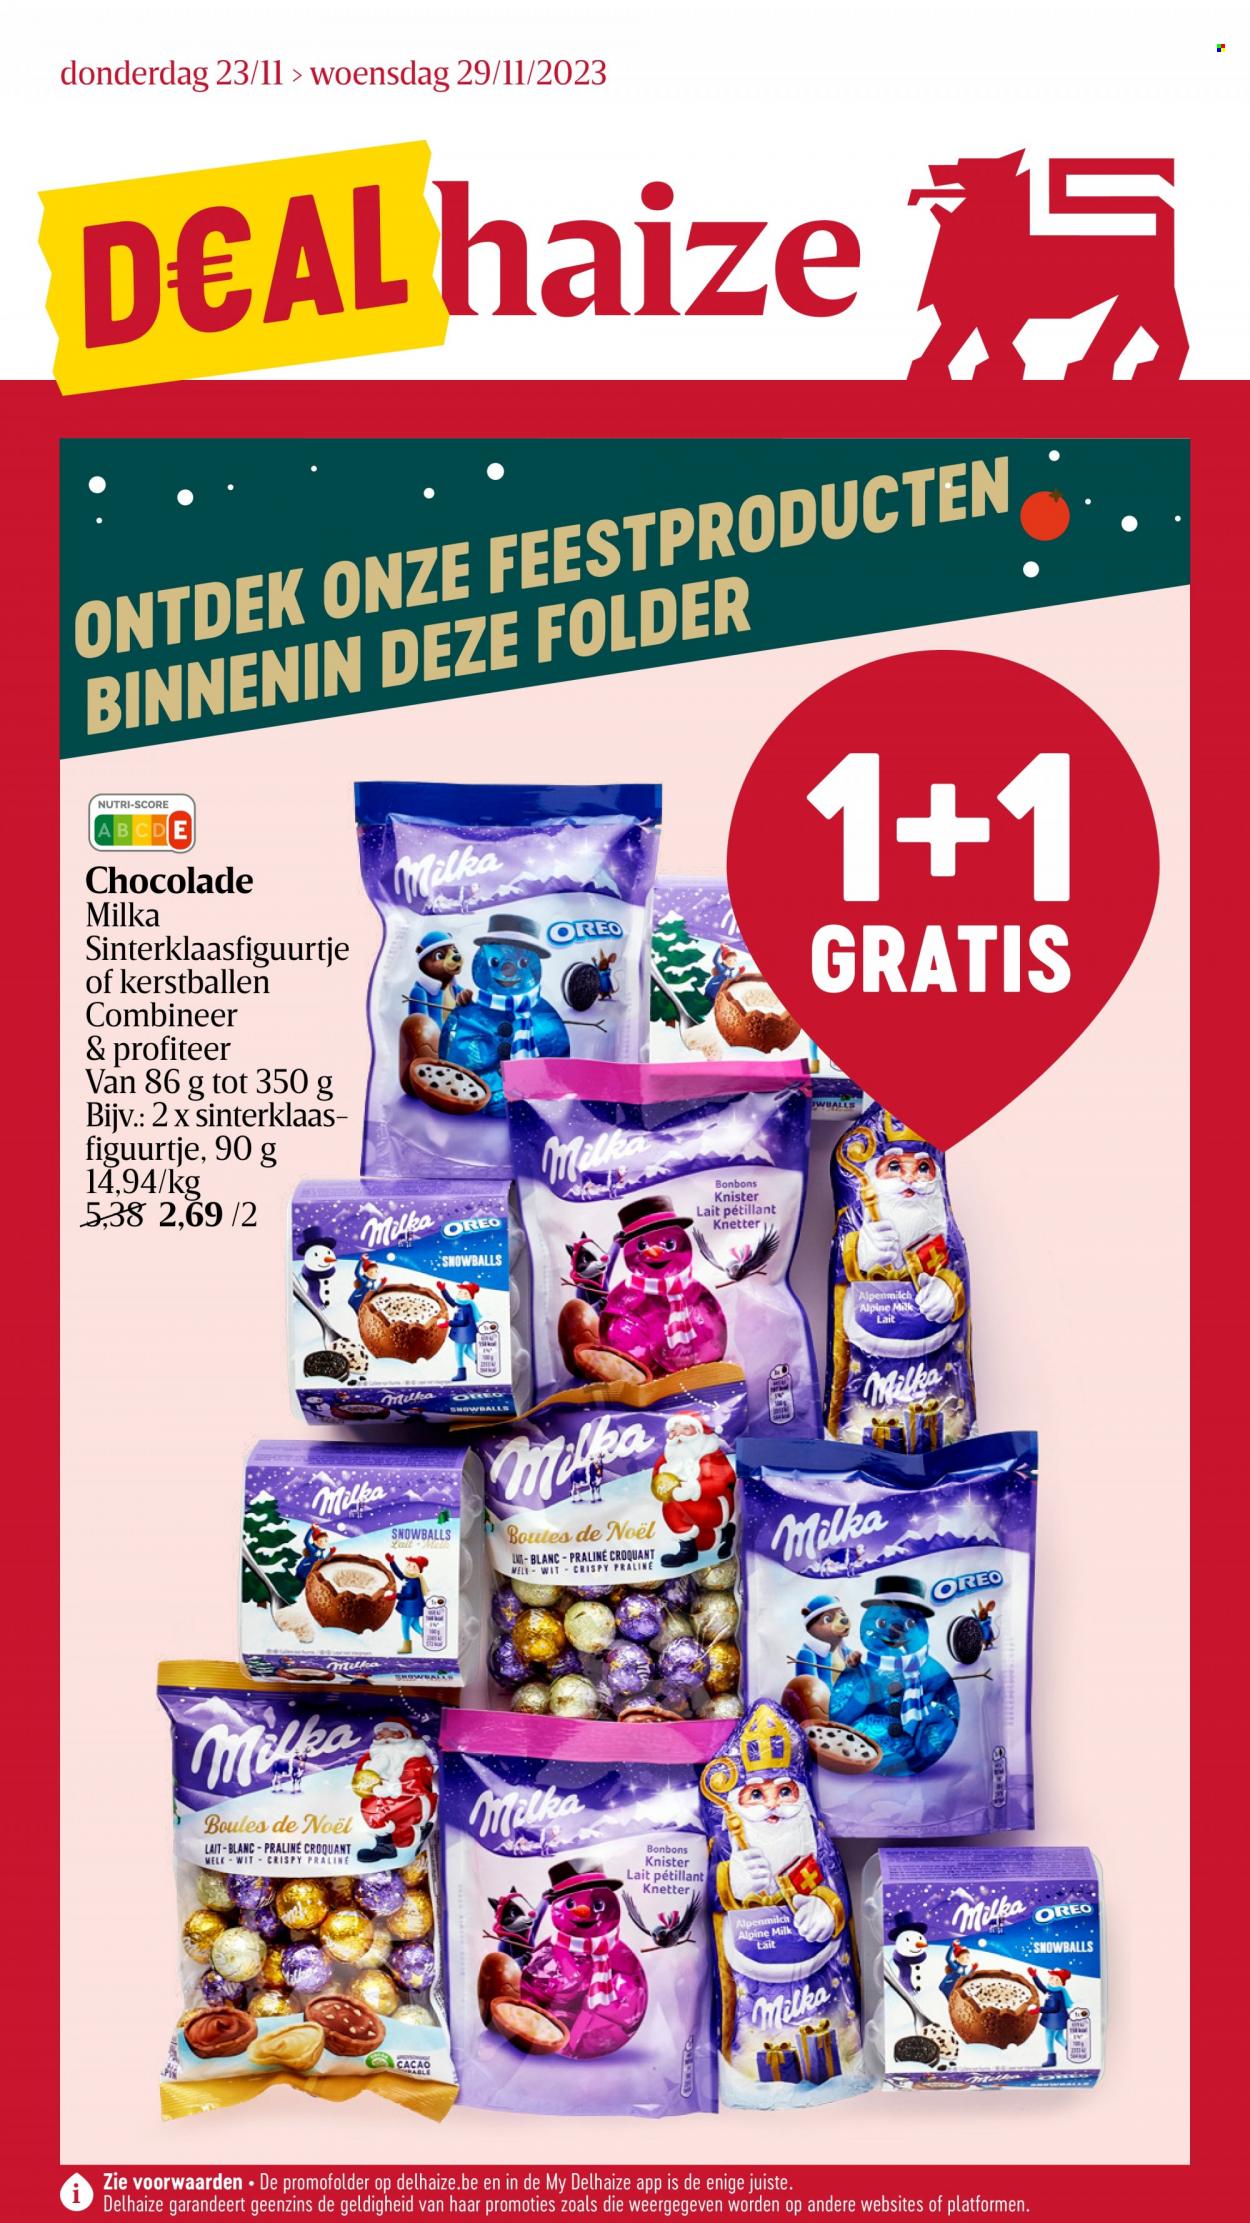 Delhaize-aanbieding - 23/11/2023 - 29/11/2023 -  producten in de aanbieding - Milka, melk, Oreo, chocolade, praline, feestproducten. Pagina 1.